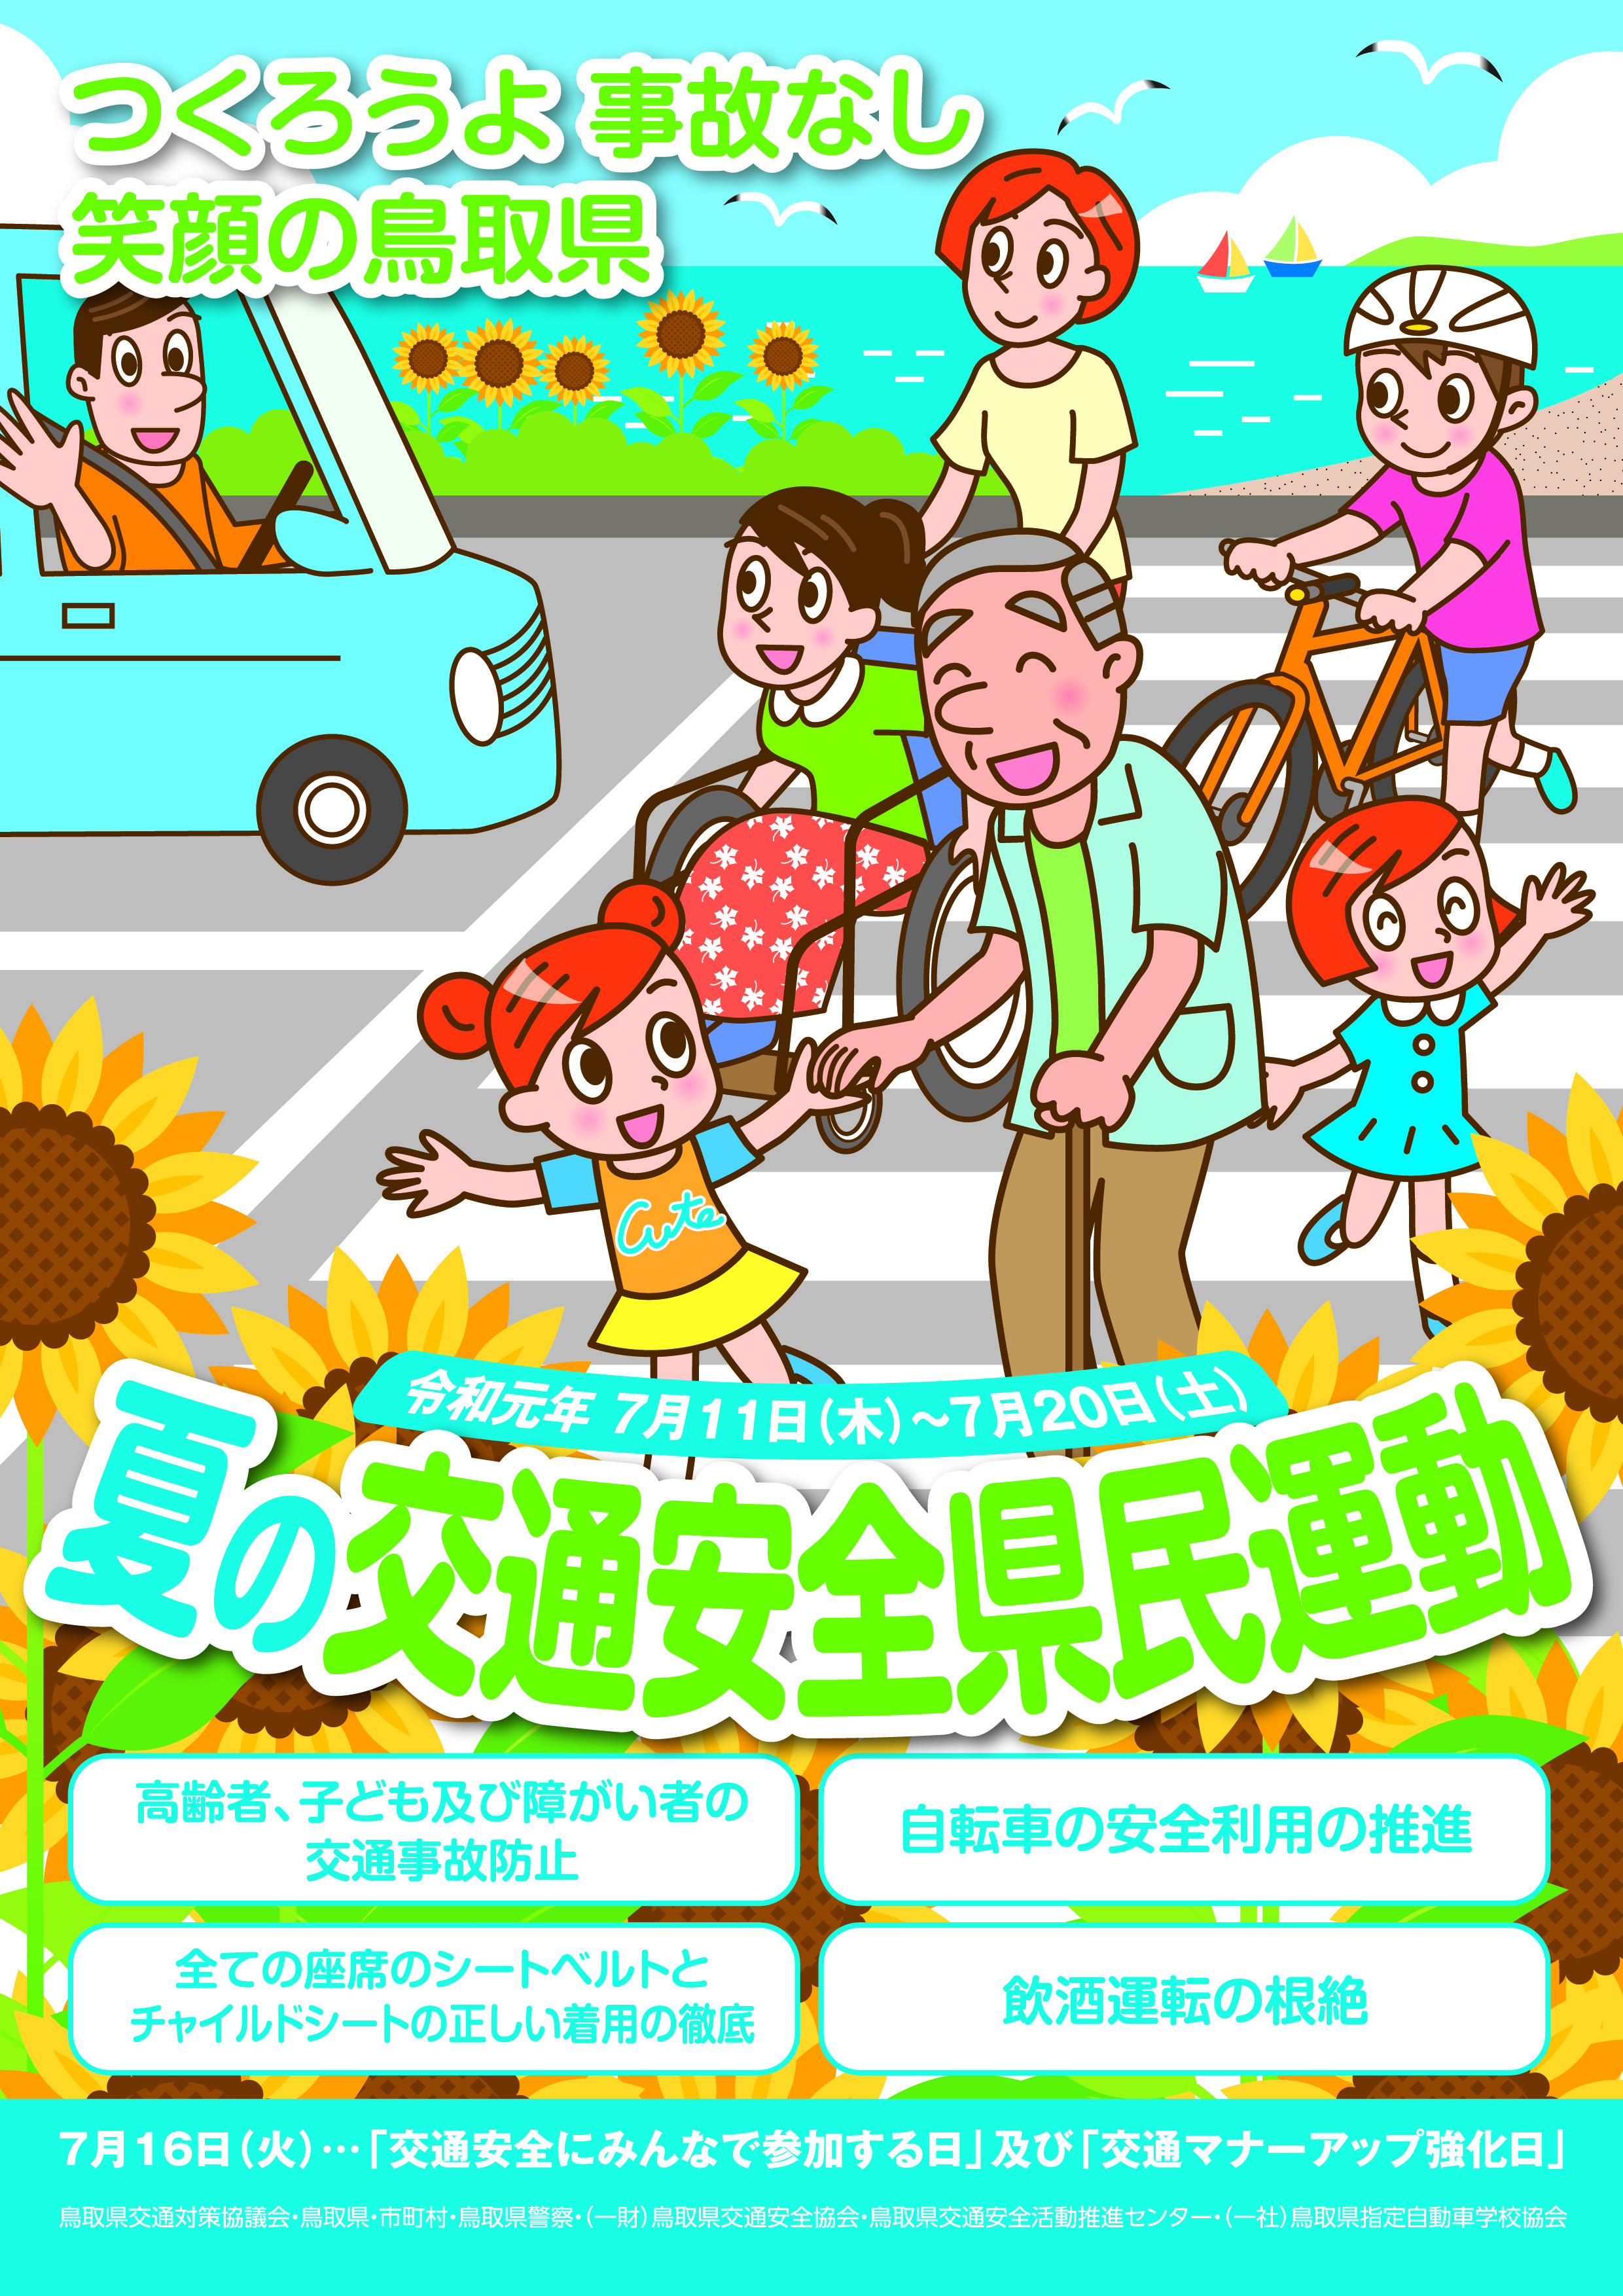 一般財団法人鳥取県交通安全協会 Blog Archive 夏の交通安全県民運動